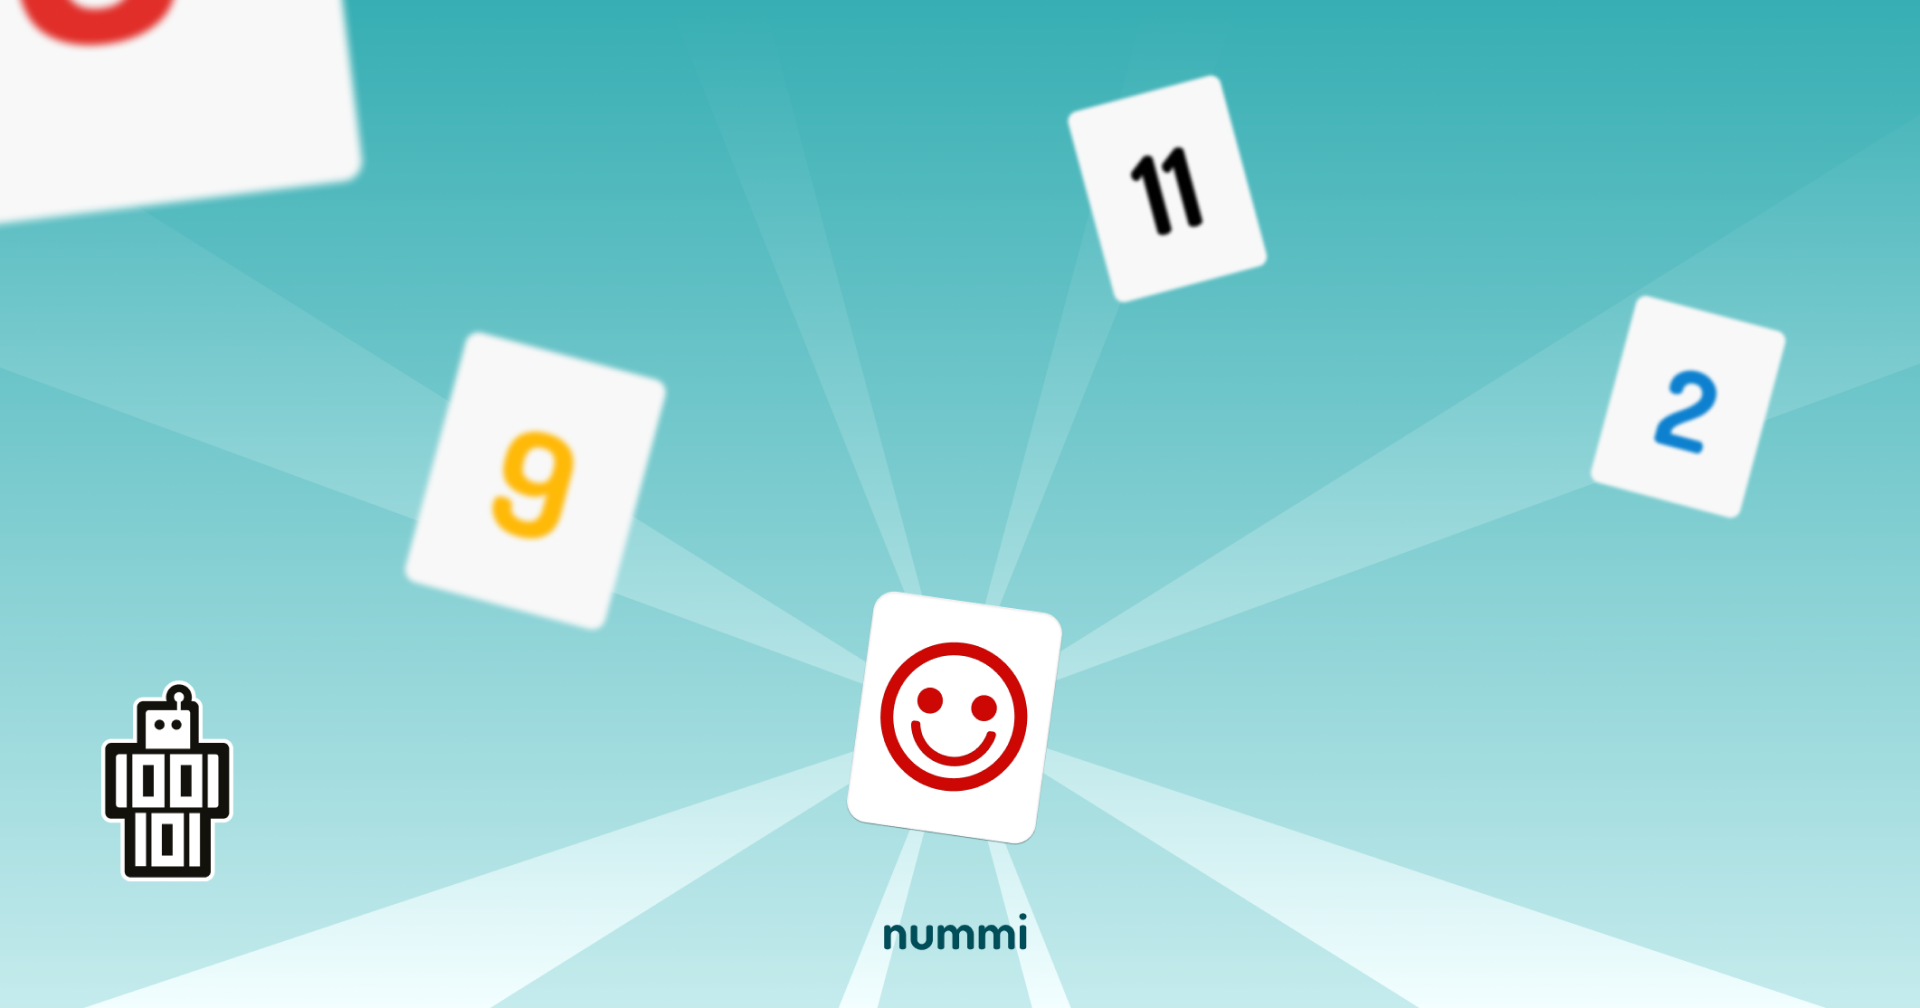 Nummi Onderhoudsupdate! - Onze app nummi heeft weer een nieuwe update!